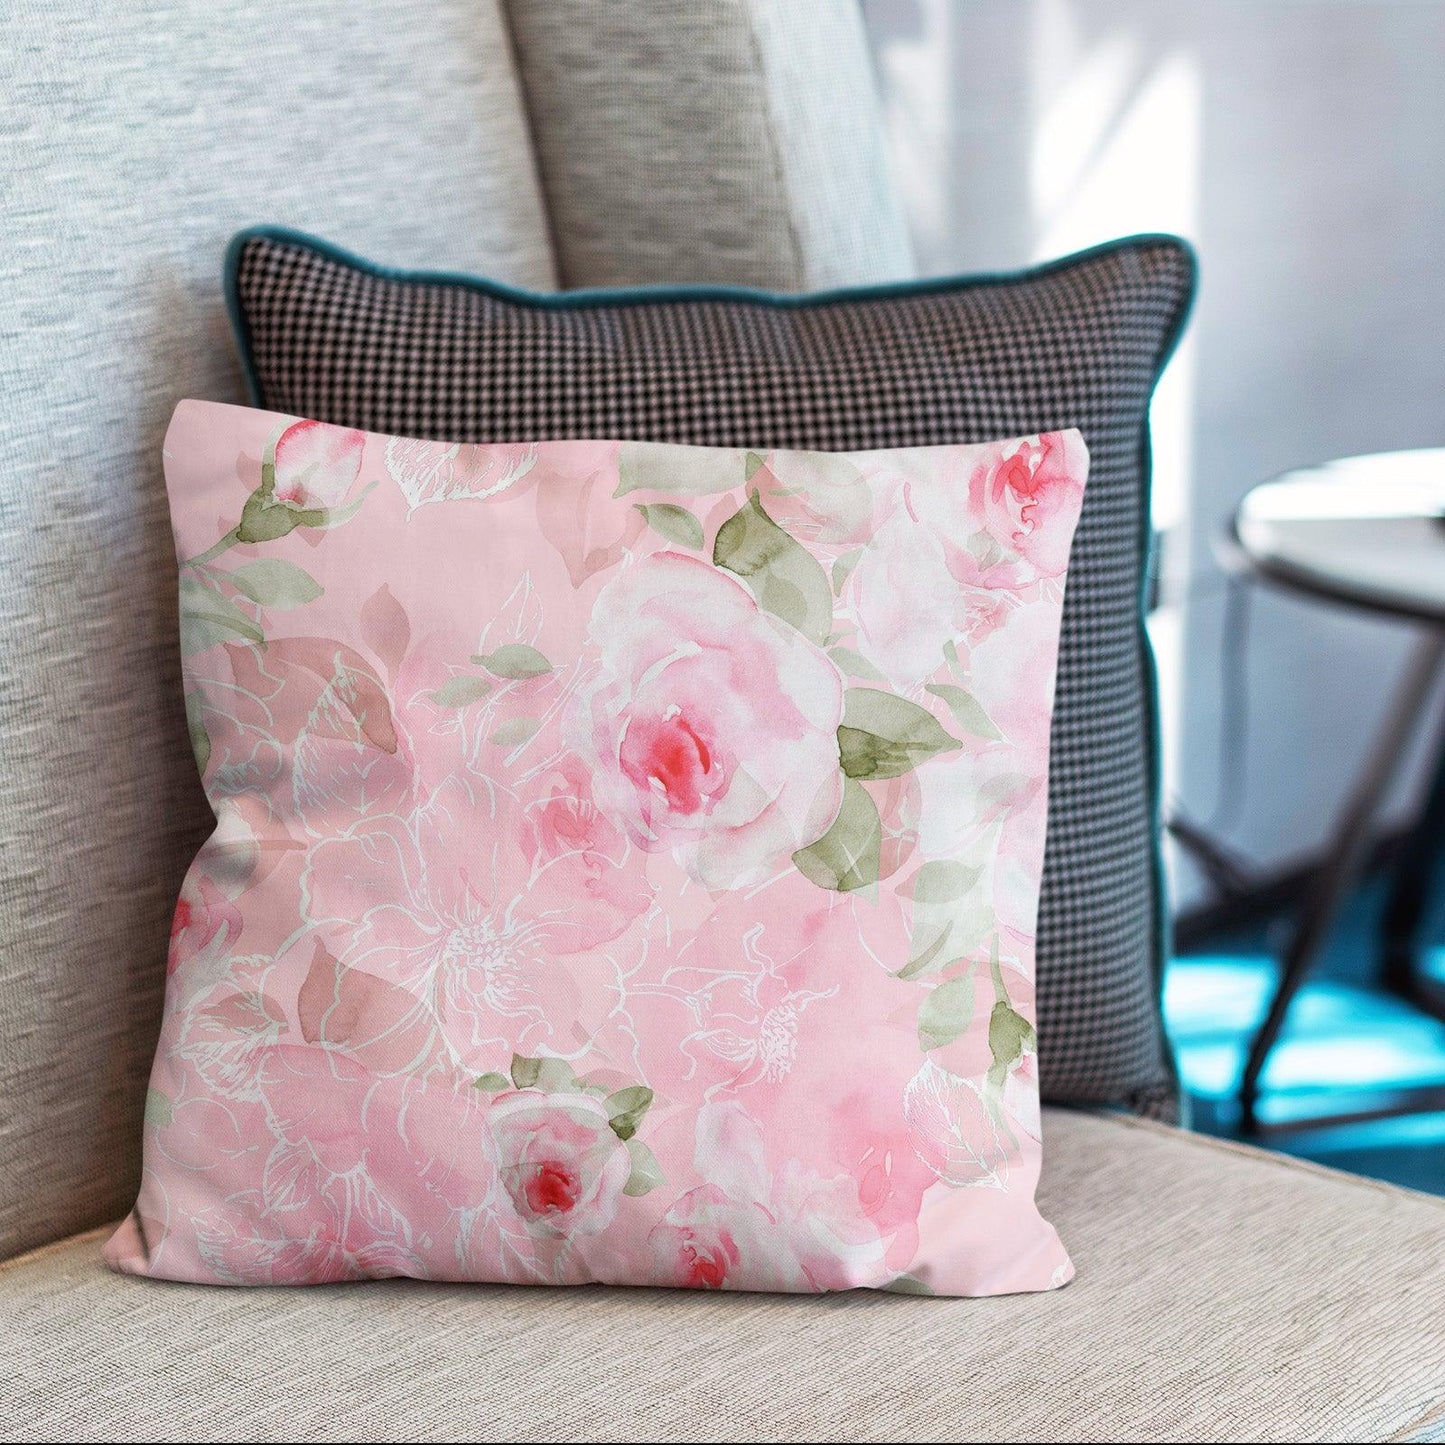 https://www.berkinarts.com/cdn/shop/files/modern-flower-throw-pillow-covers-pack-of-2-18x18-inch-cute-pink-roses-berkin-arts-7.jpg?v=1688965251&width=1445